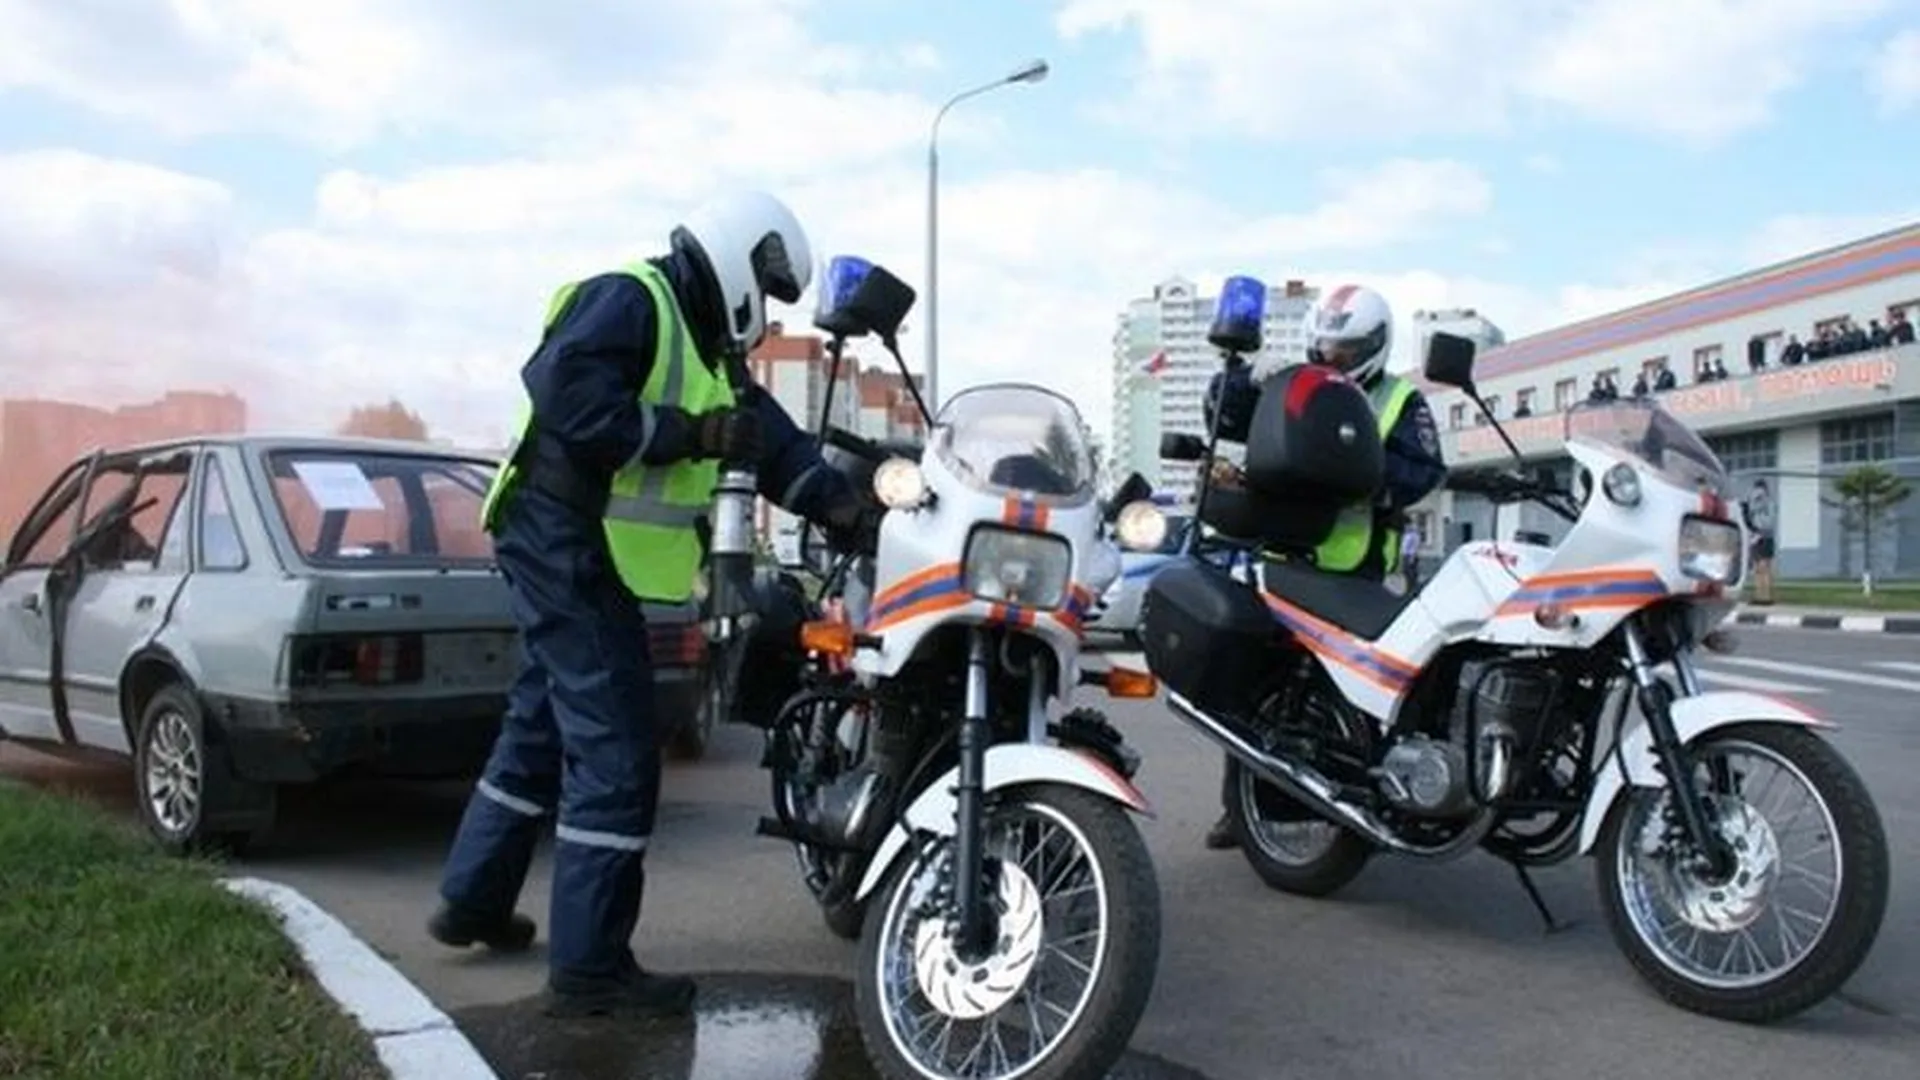 Спасатели на мотоциклах за май-июнь спасли уже 33 жизни - Пестов